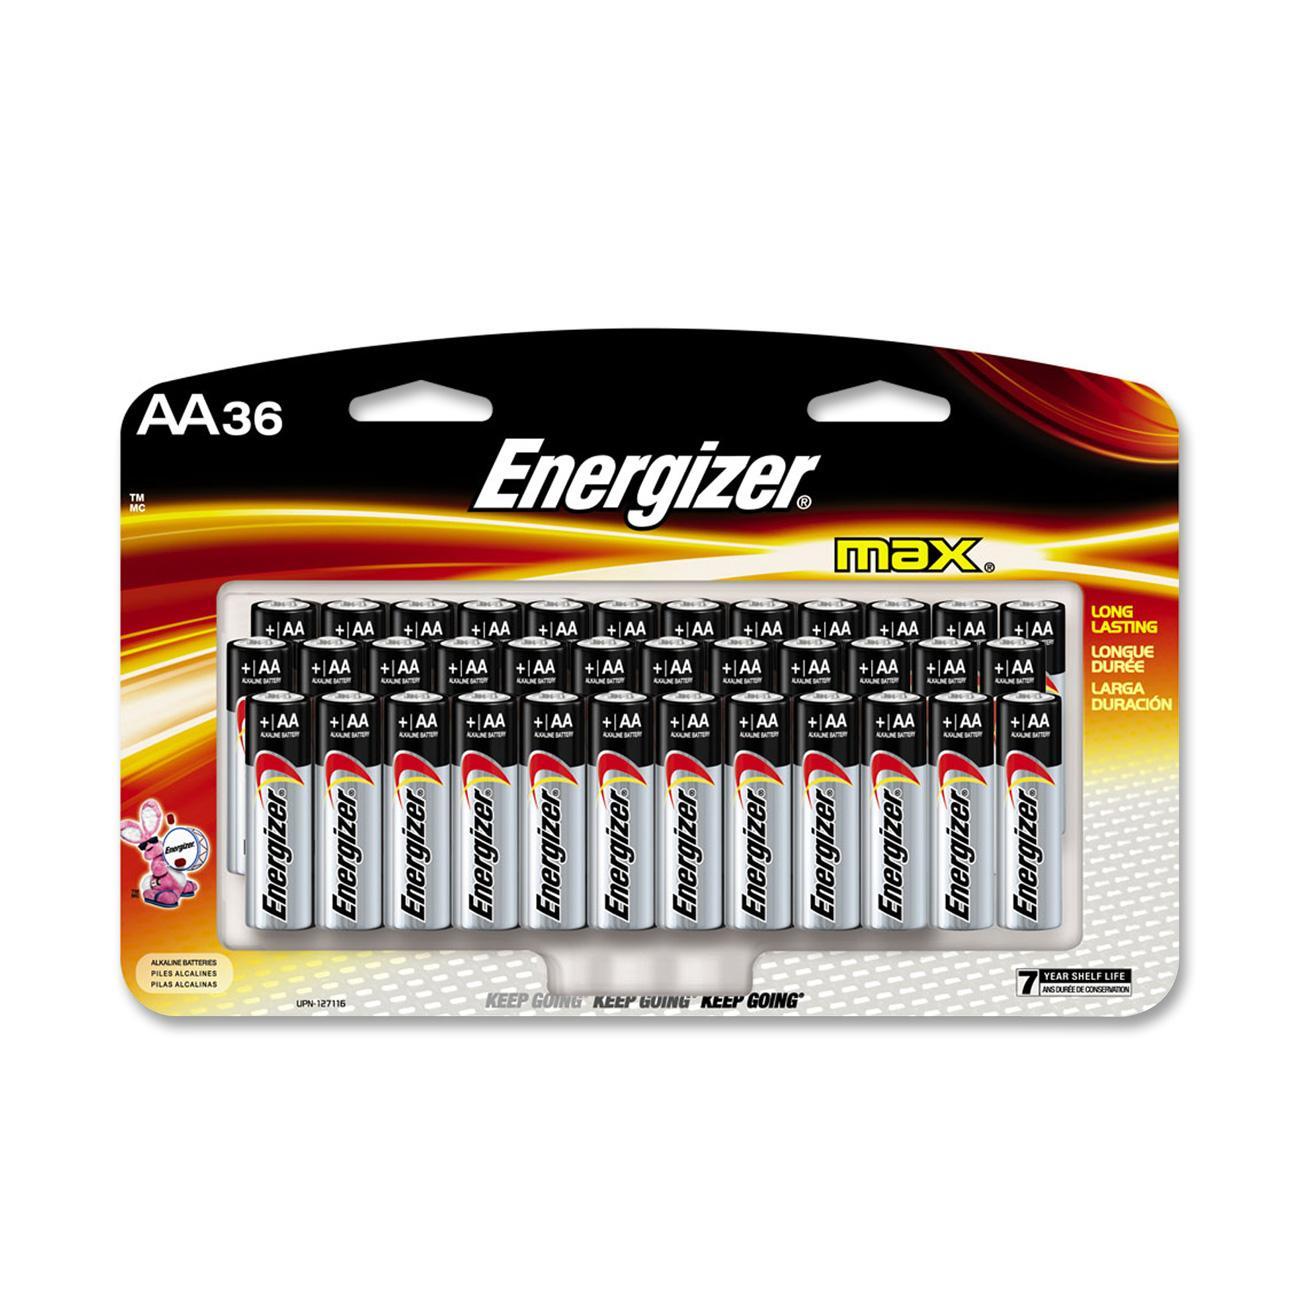 Energizer AA Size Alkaline General Purpose Battery, AA - Alkaline